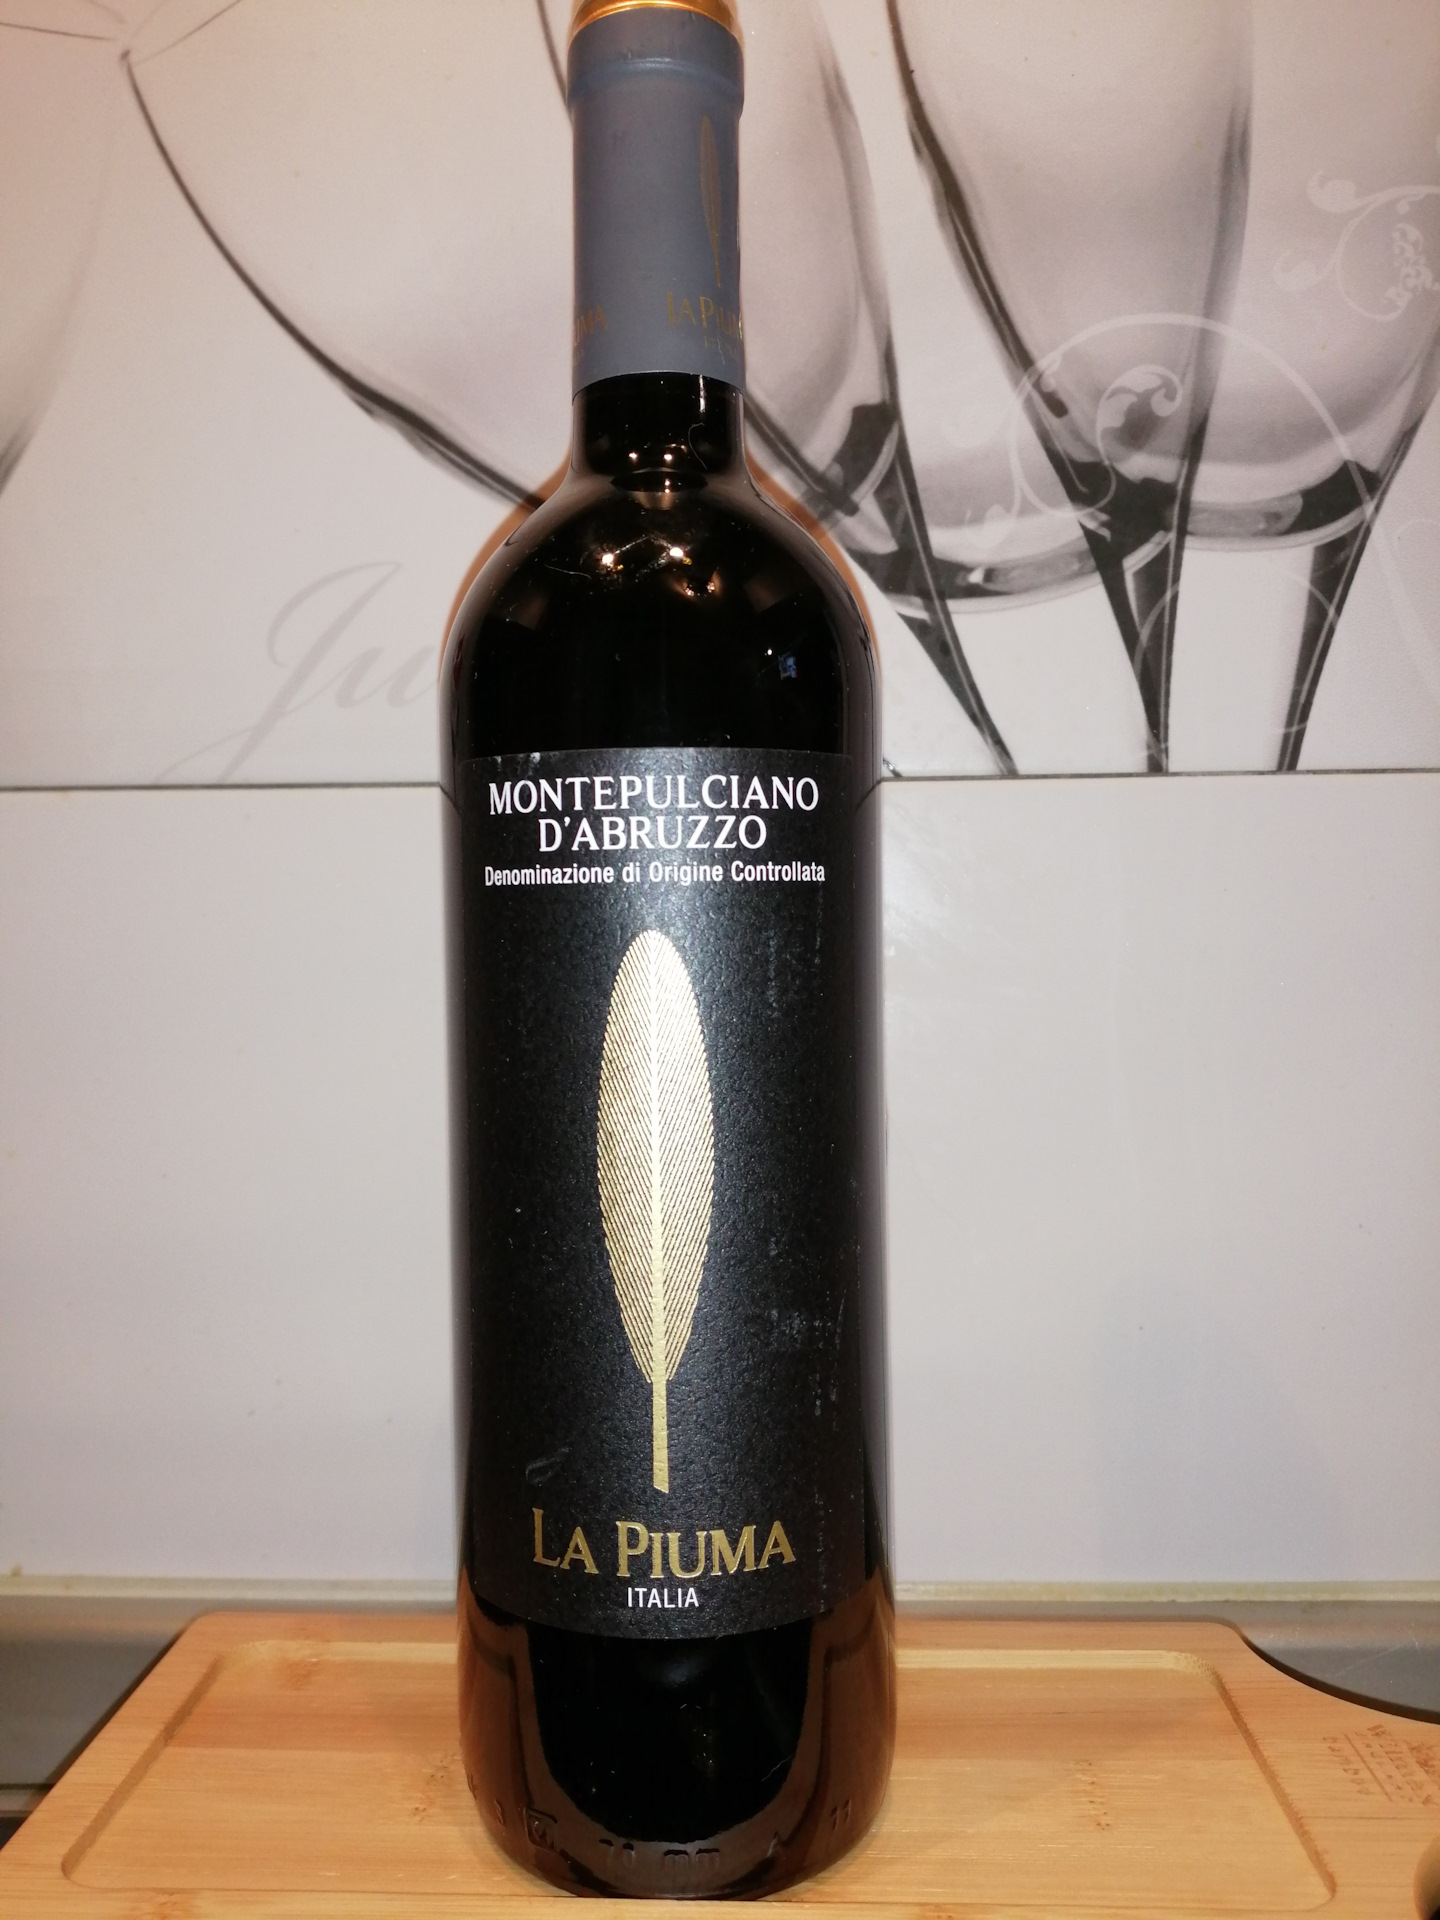 Вино красное монтепульчано д абруццо. La Piuma вино красное. Вино Монтепульчано д'Абруццо. Ла ПЬЮМА Монтепульчано. La Piuma вино Montepulciano d'Abruzzo.